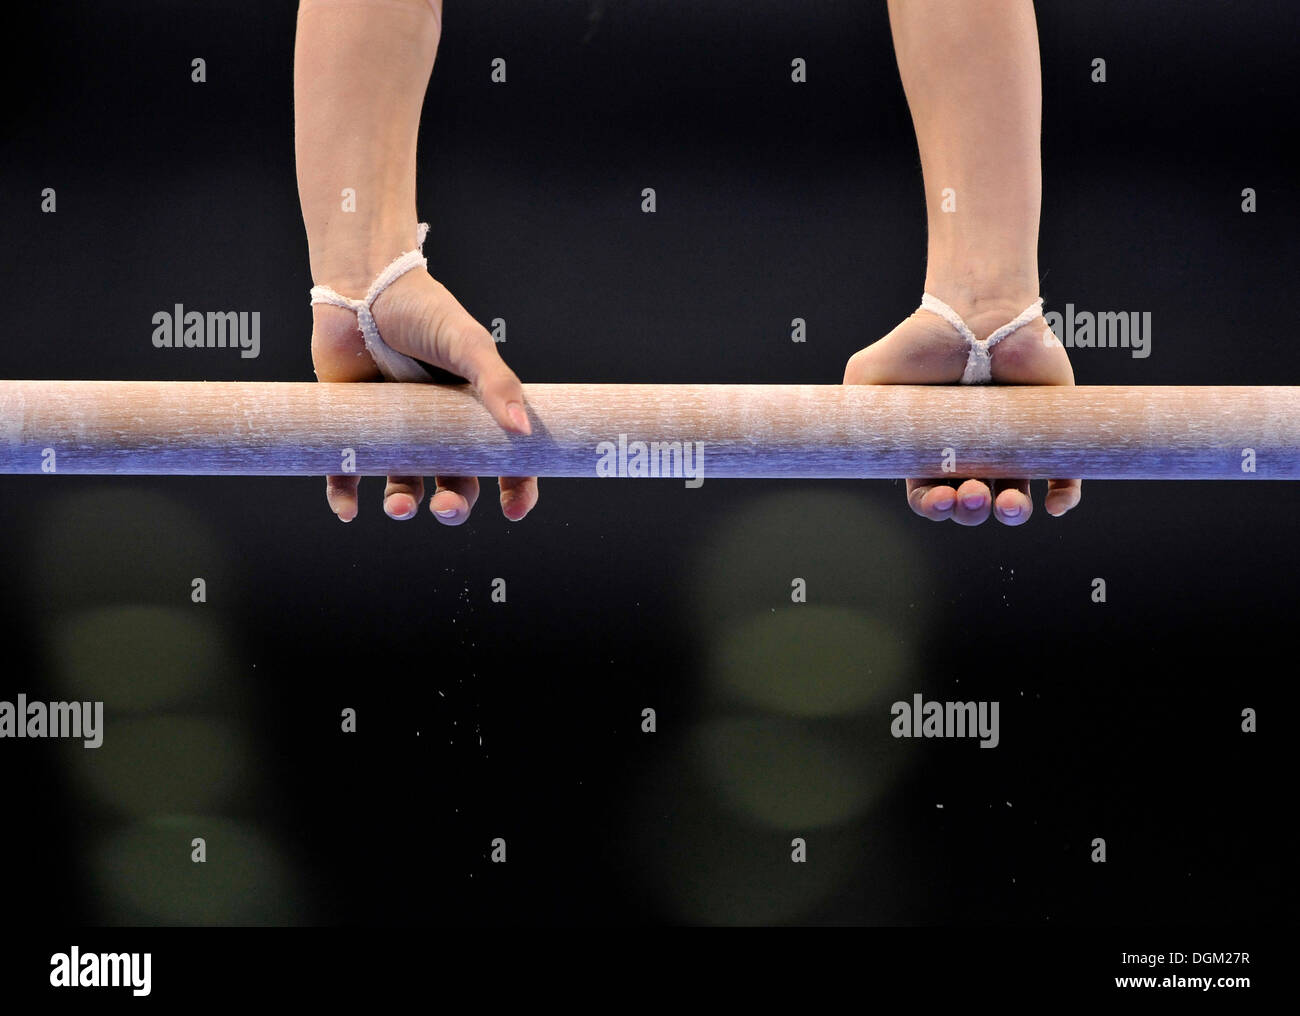 Détail, gymnaste sur barres asymétriques Banque D'Images